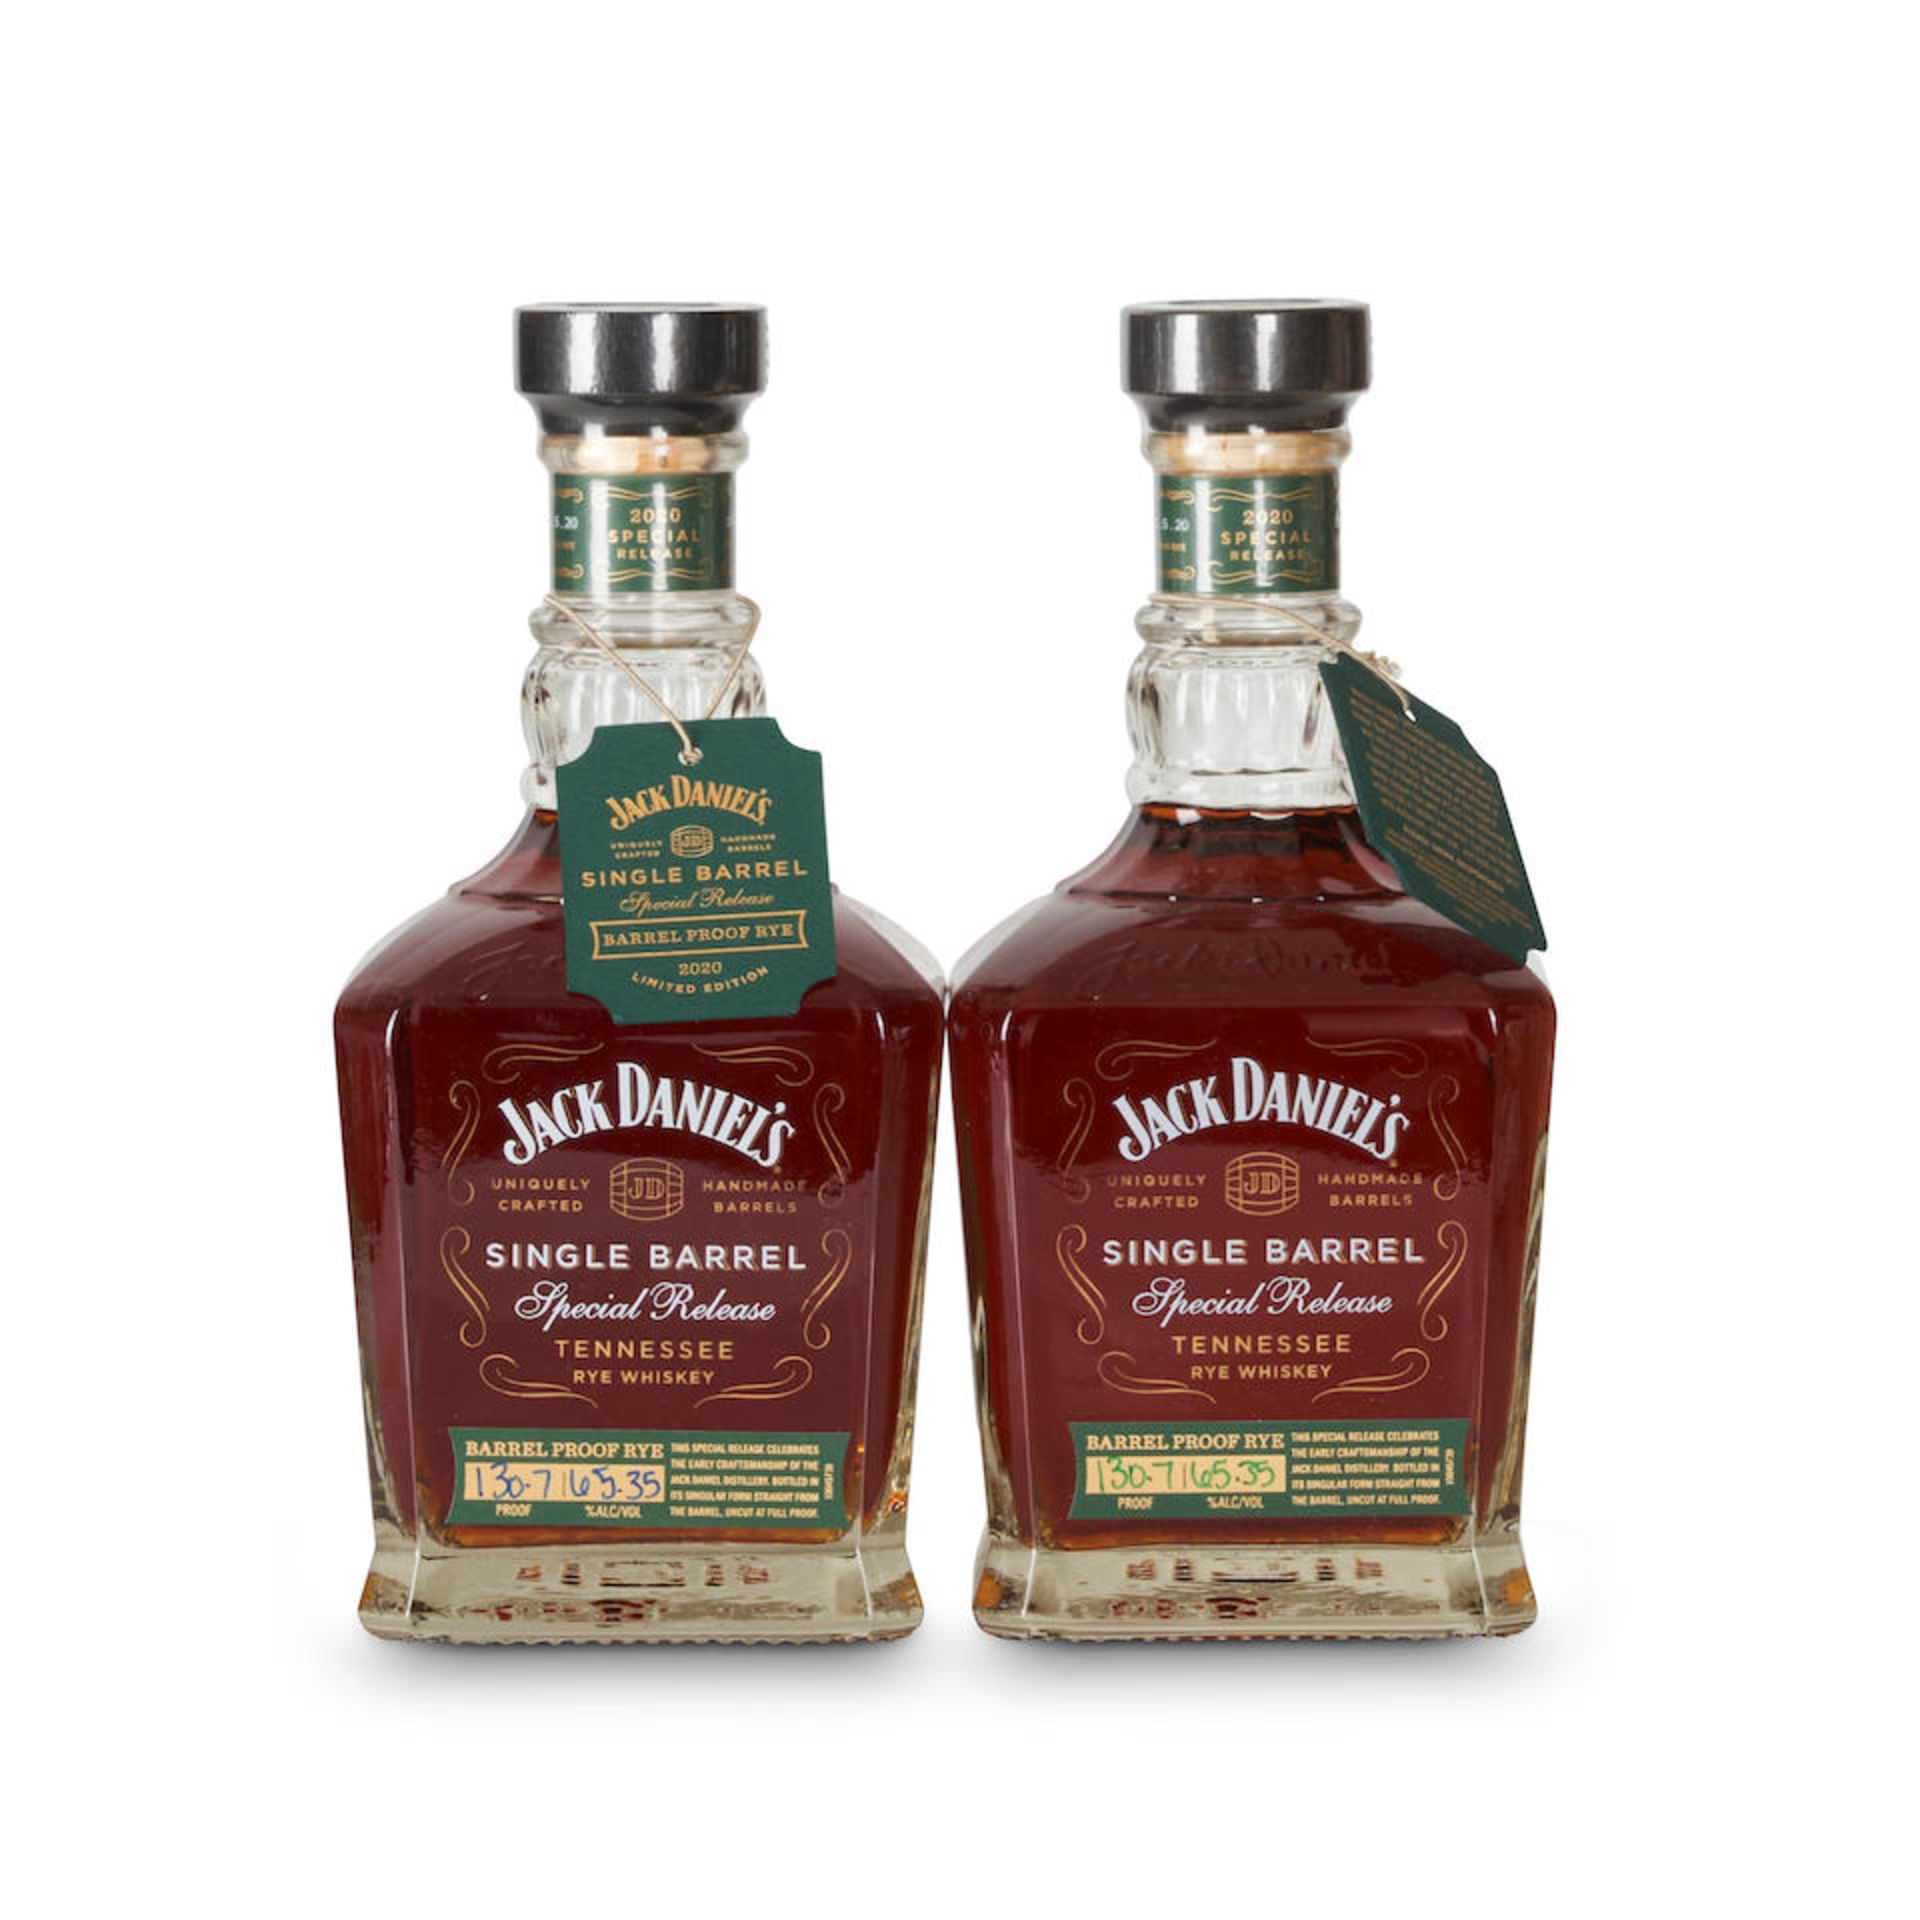 Jack Daniel's Single Barrel Barrel Proof Rye (2 750ml bottles)